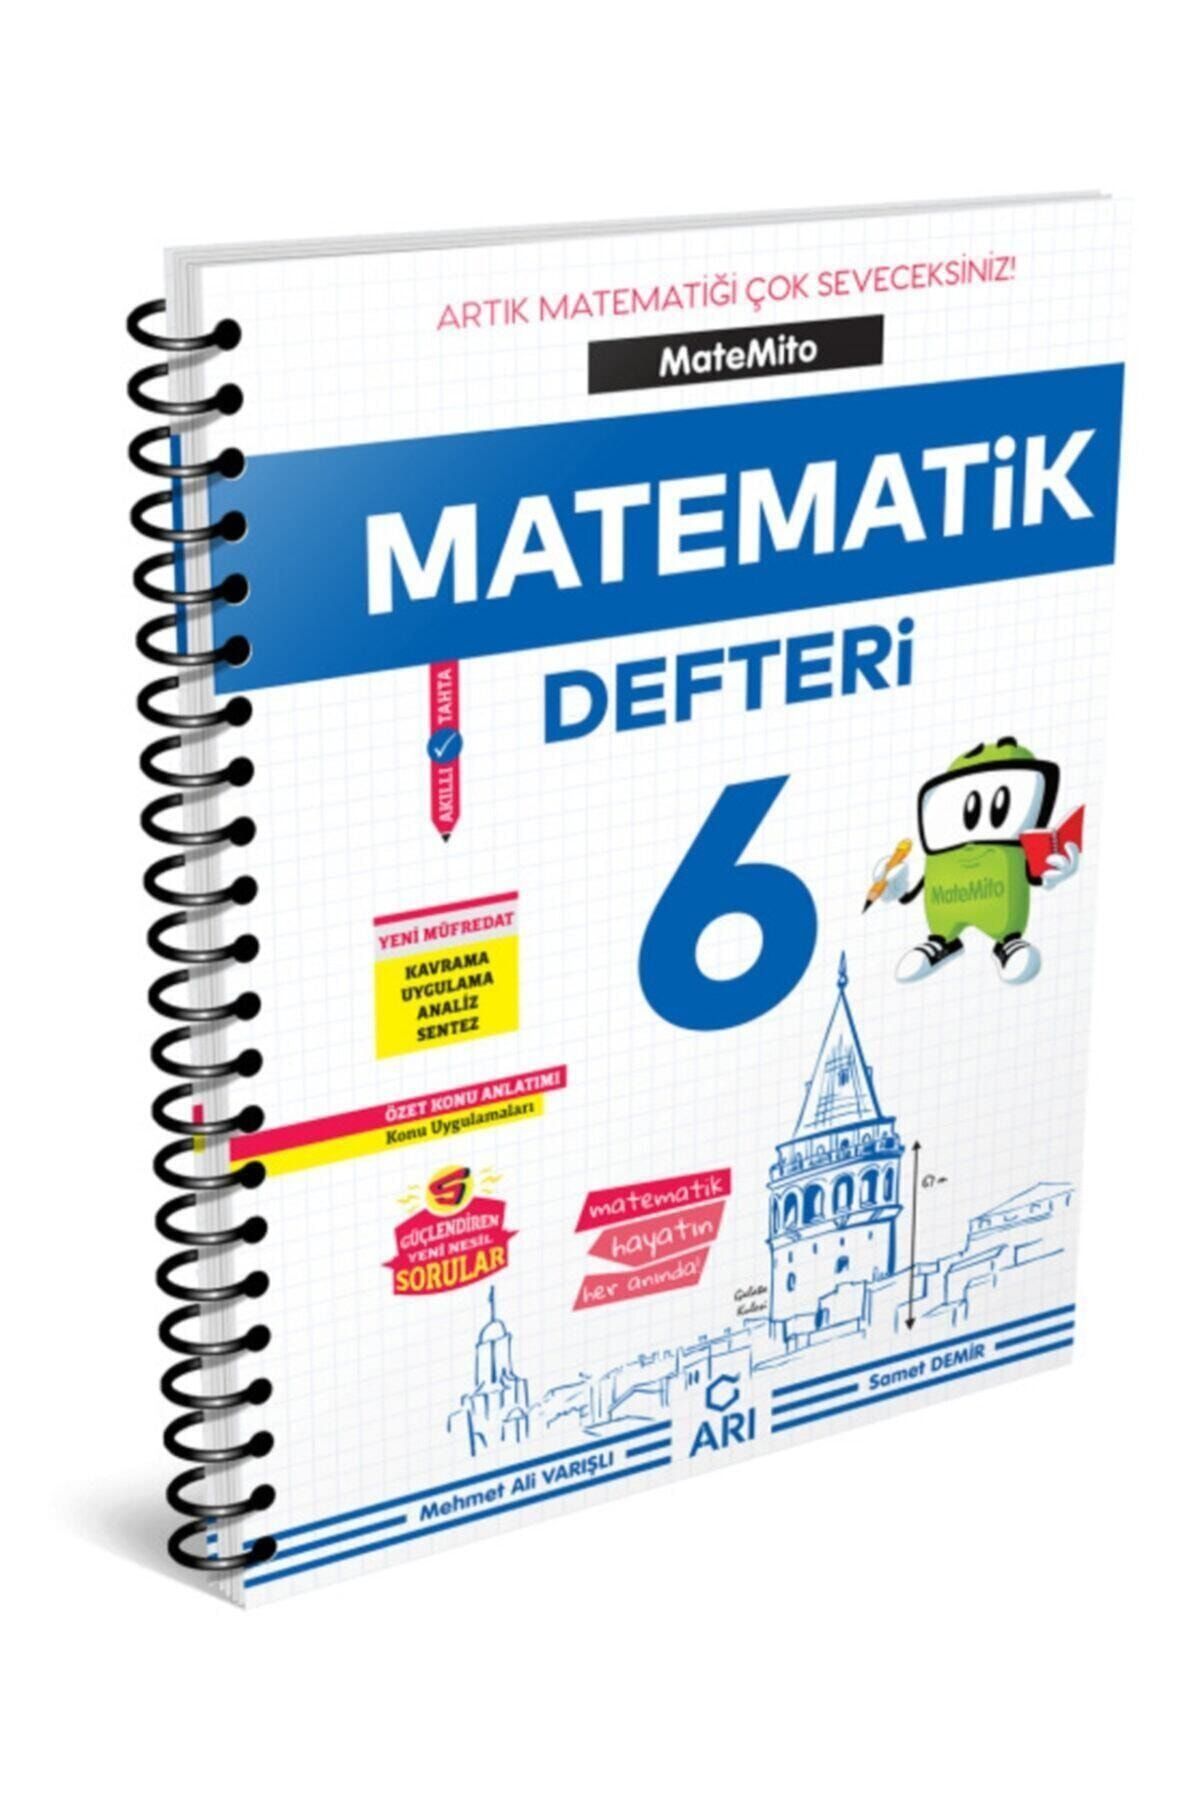 Arı Yayıncılık 6.sınıf Akıllı Matematik Defteri Matemito